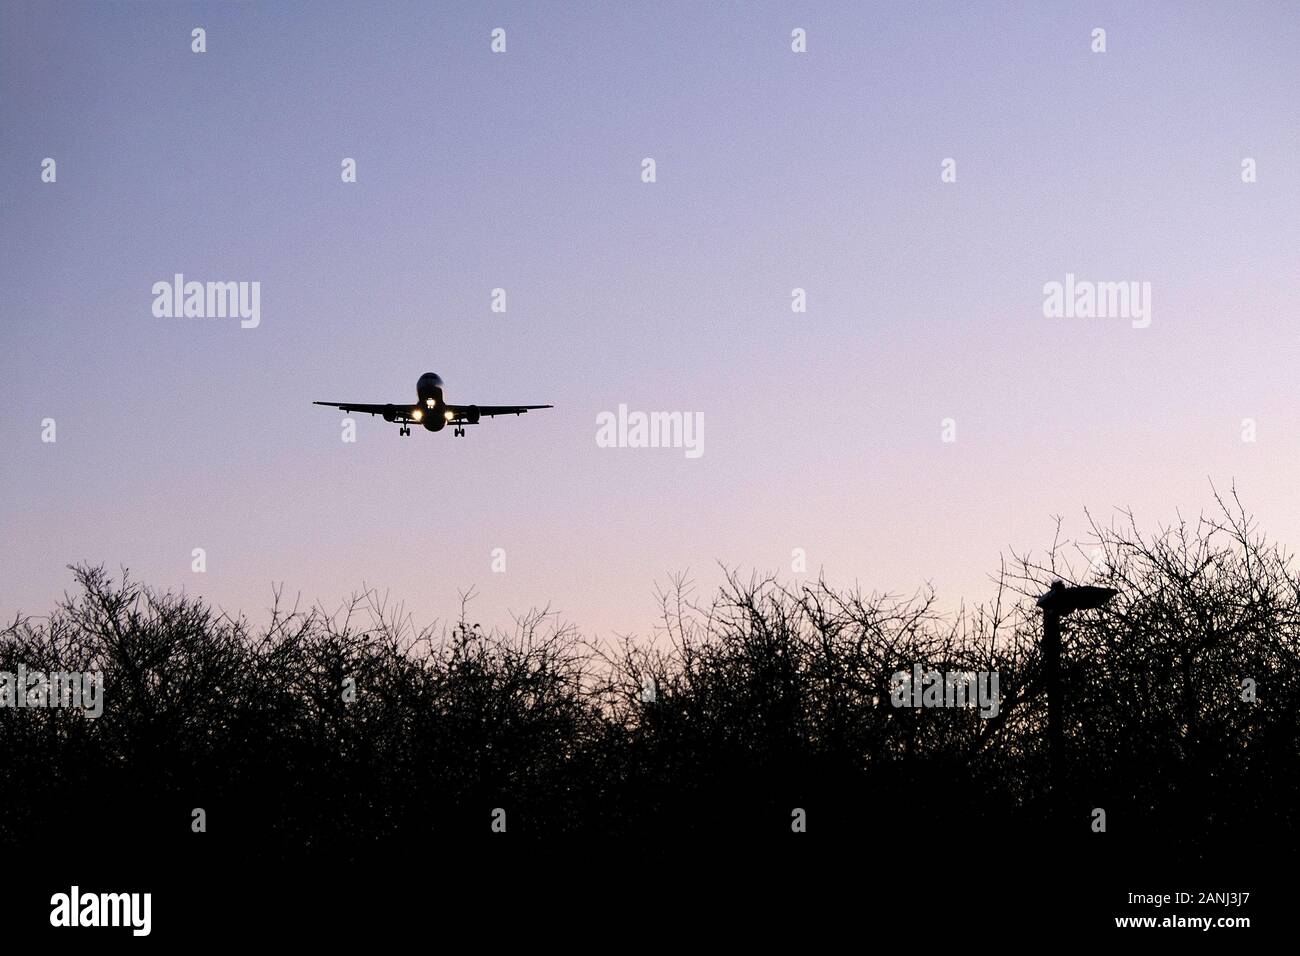 Un avion en bas vol s'est approché de l'aéroport d'Heathrow, Londres, LHR, le matin d'une direction est. Le train d'atterrissage de l'avion est abaissé. Banque D'Images